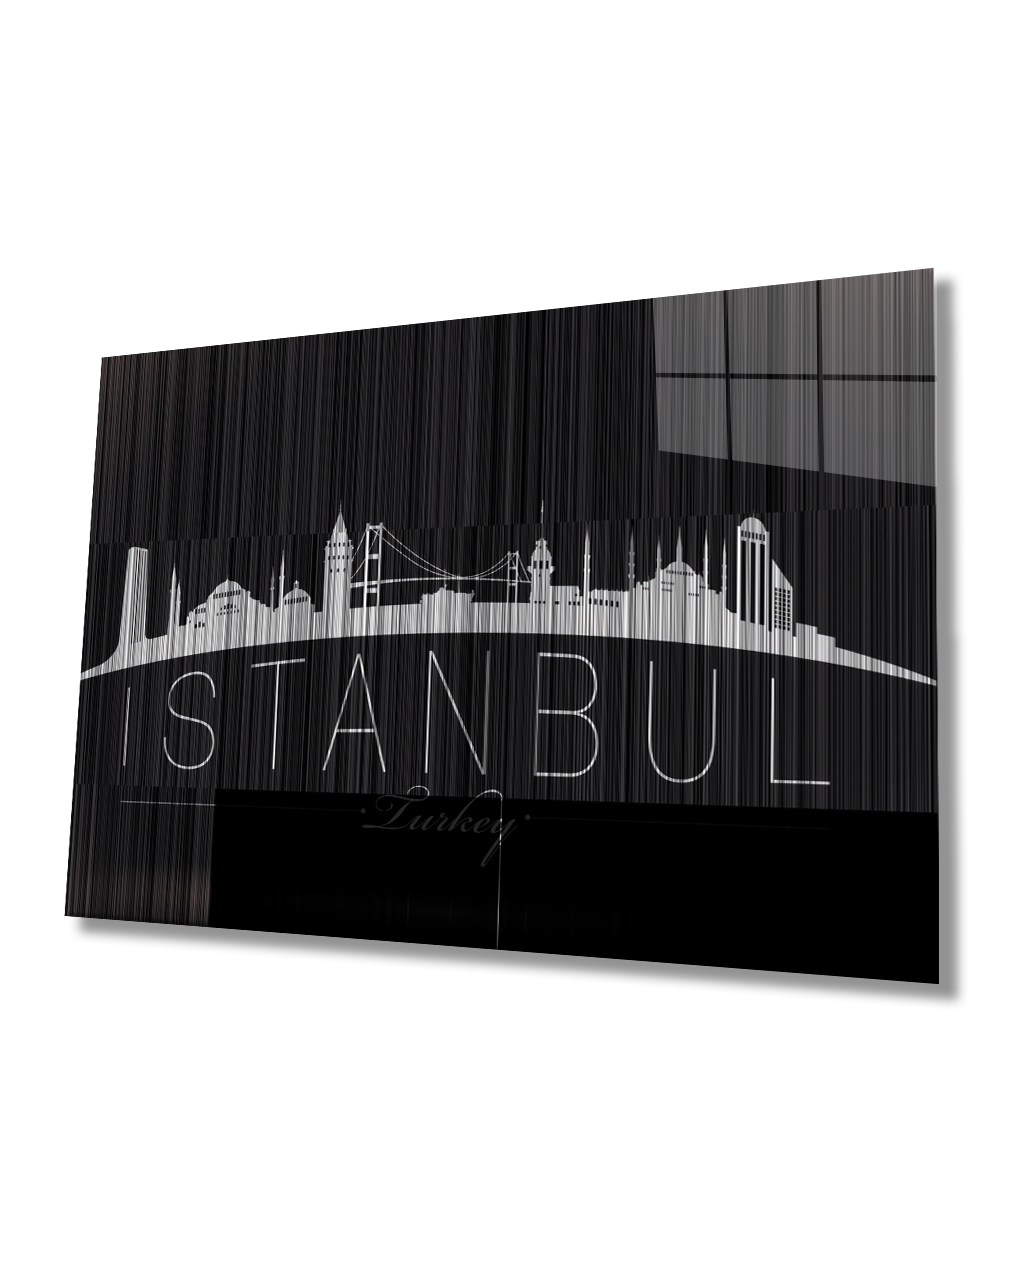 İstanbul Turkey Yazılı Siyah Beyaz  4mm Dayanıklı  Cam Tablo Temperli Cam